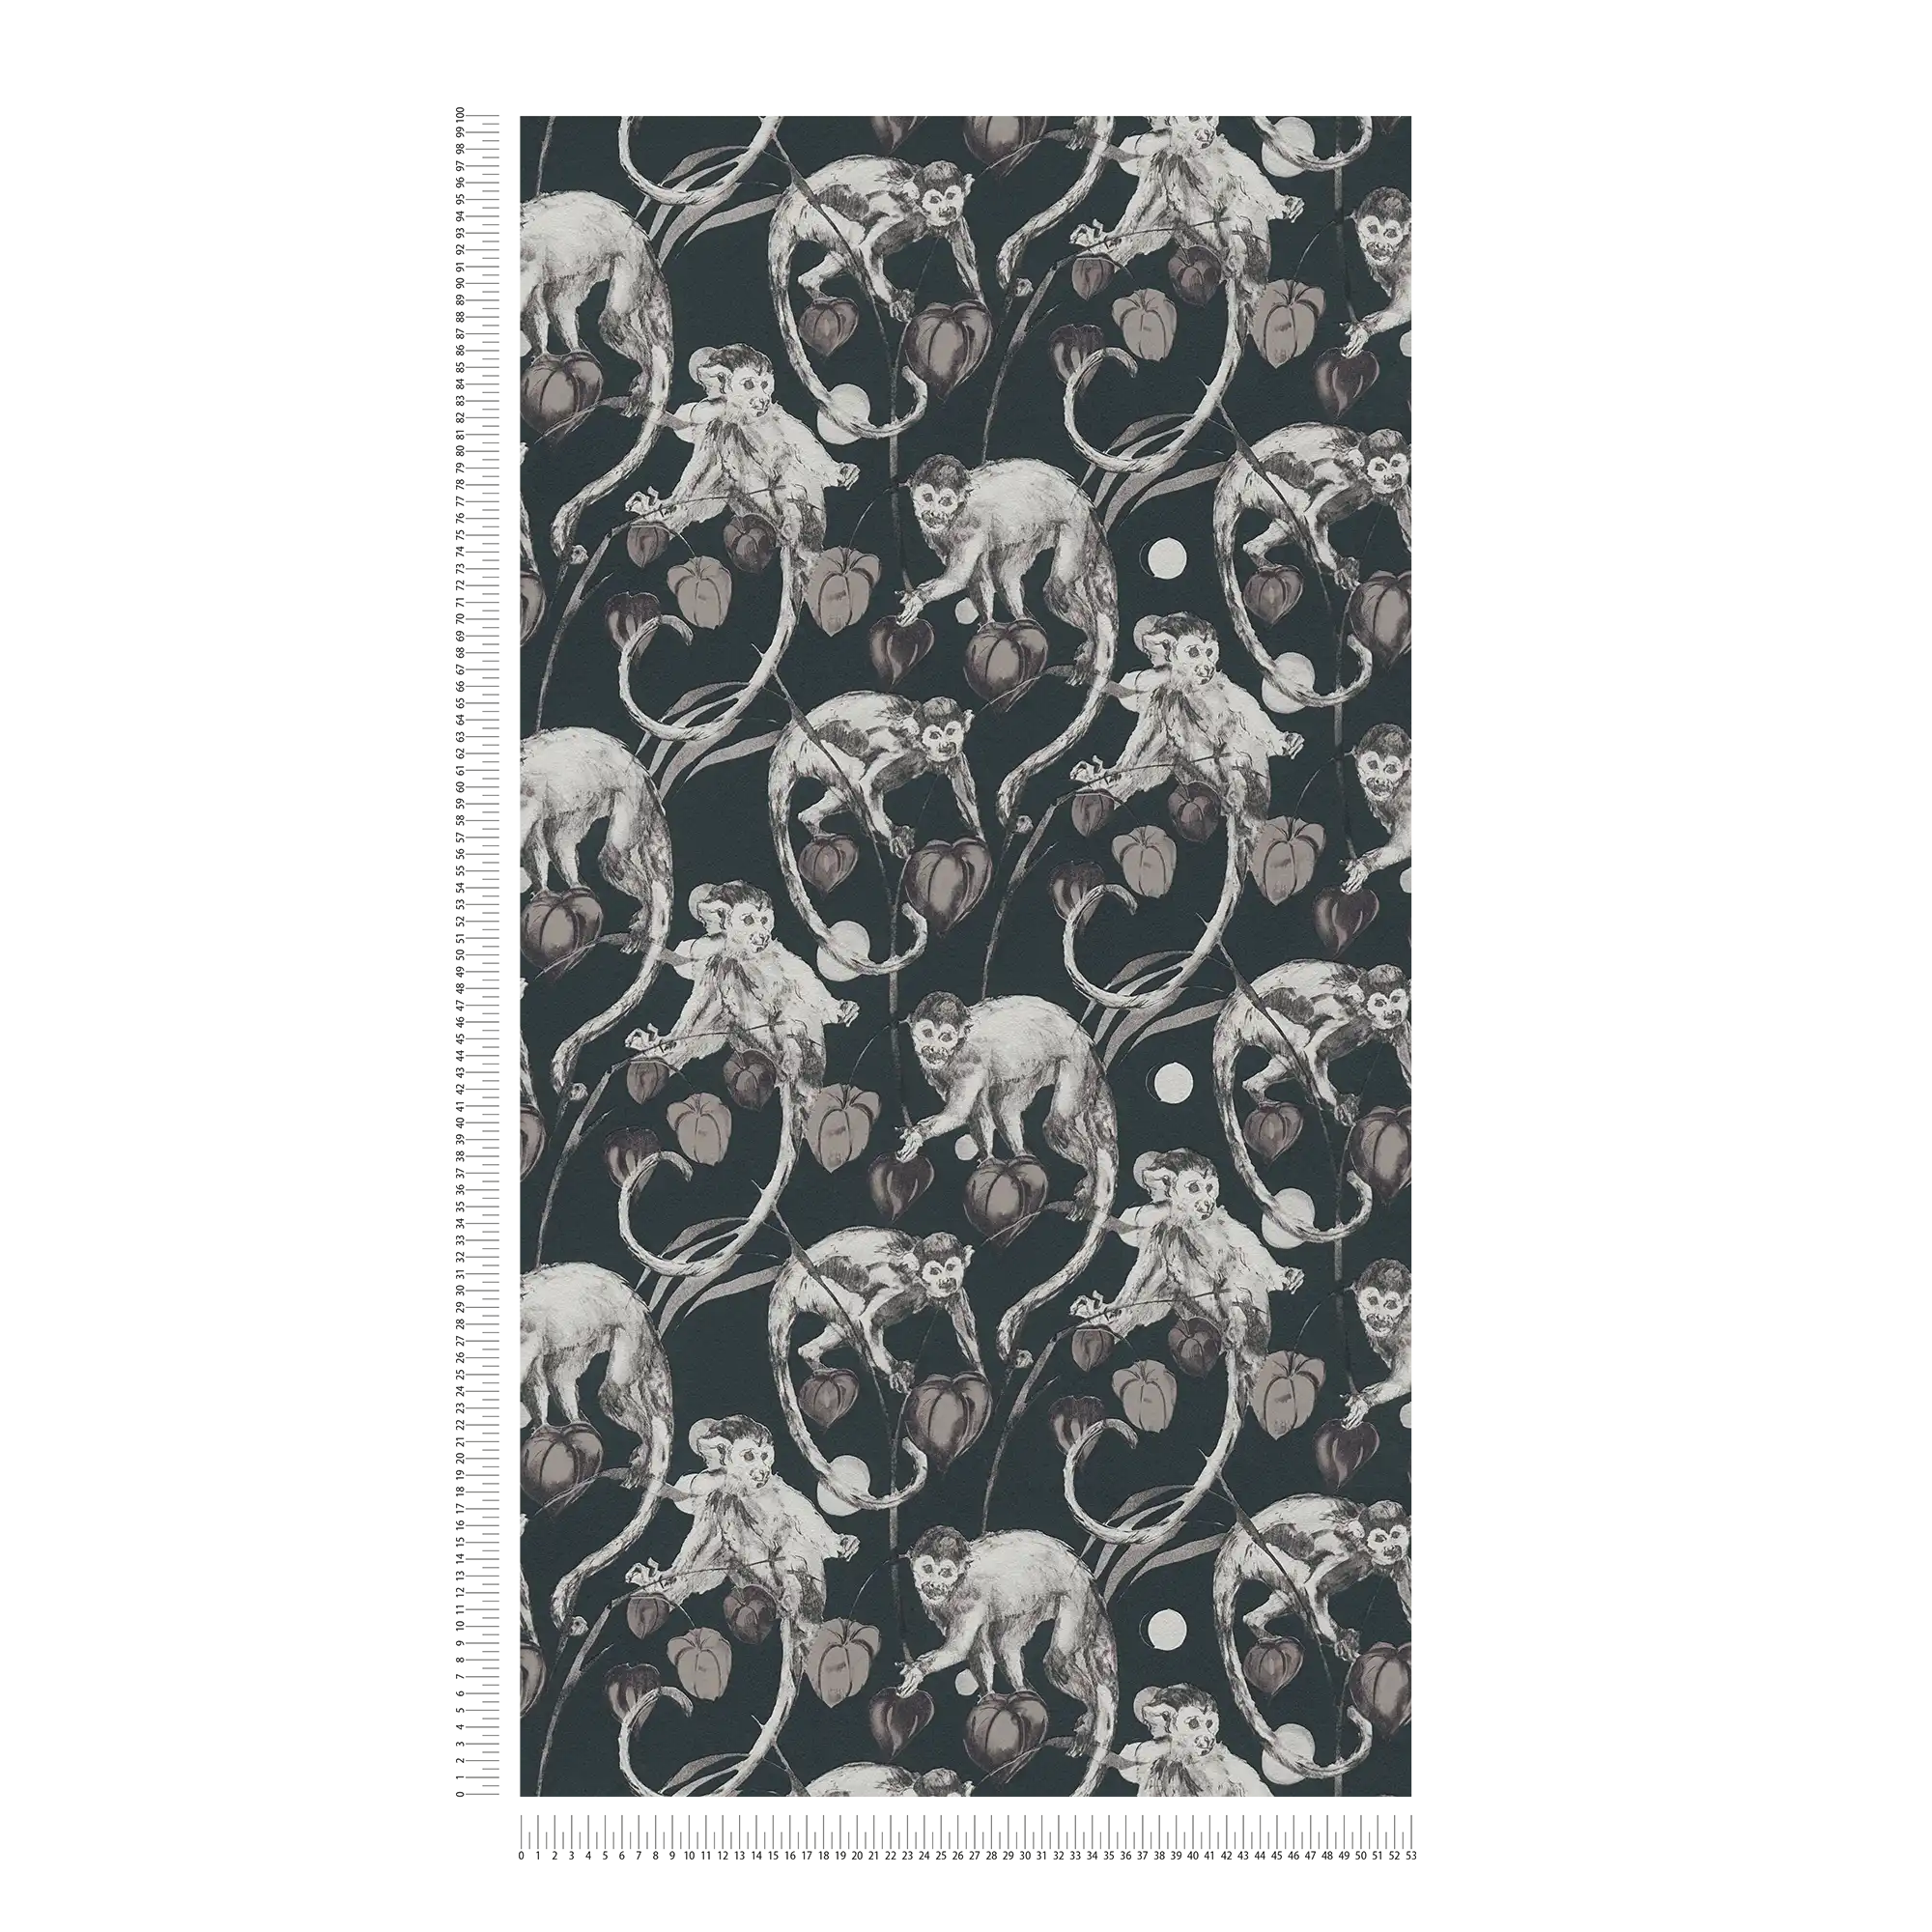             Donker vliesbehang apen & bladeren ontwerp van MICHALSKY
        